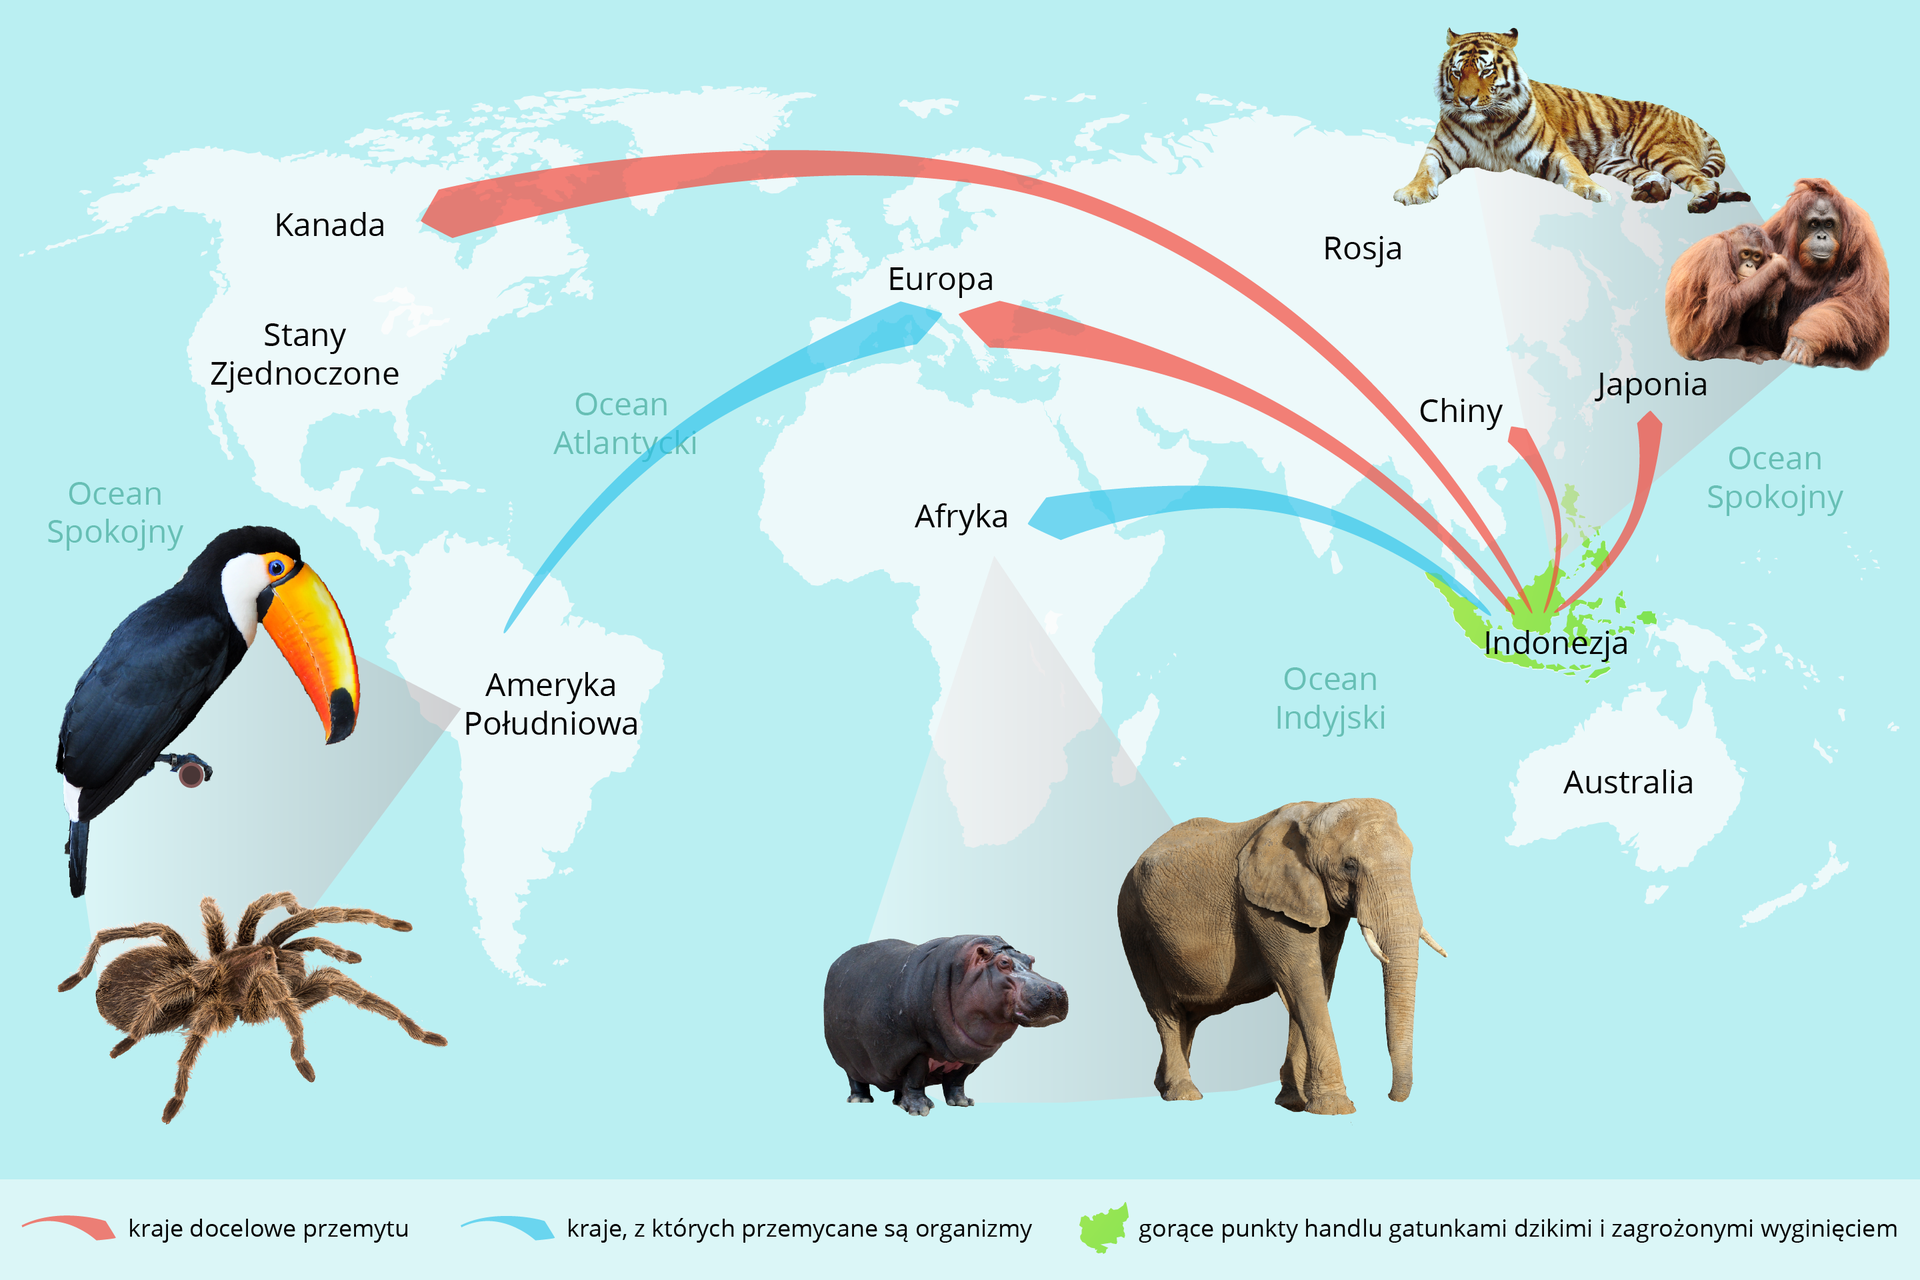 Ilustracja przedstawia mapę świata na błękitnym tle. Na obrzeżach znajdują się wizerunki zagrożonych gatunków. Strzałki wskazują drogi przemytu zwierząt. Kolorem zielonym oznaczono gorące punkty handlu gatunkami dzikimi i zagrożonymi wyginięciem.